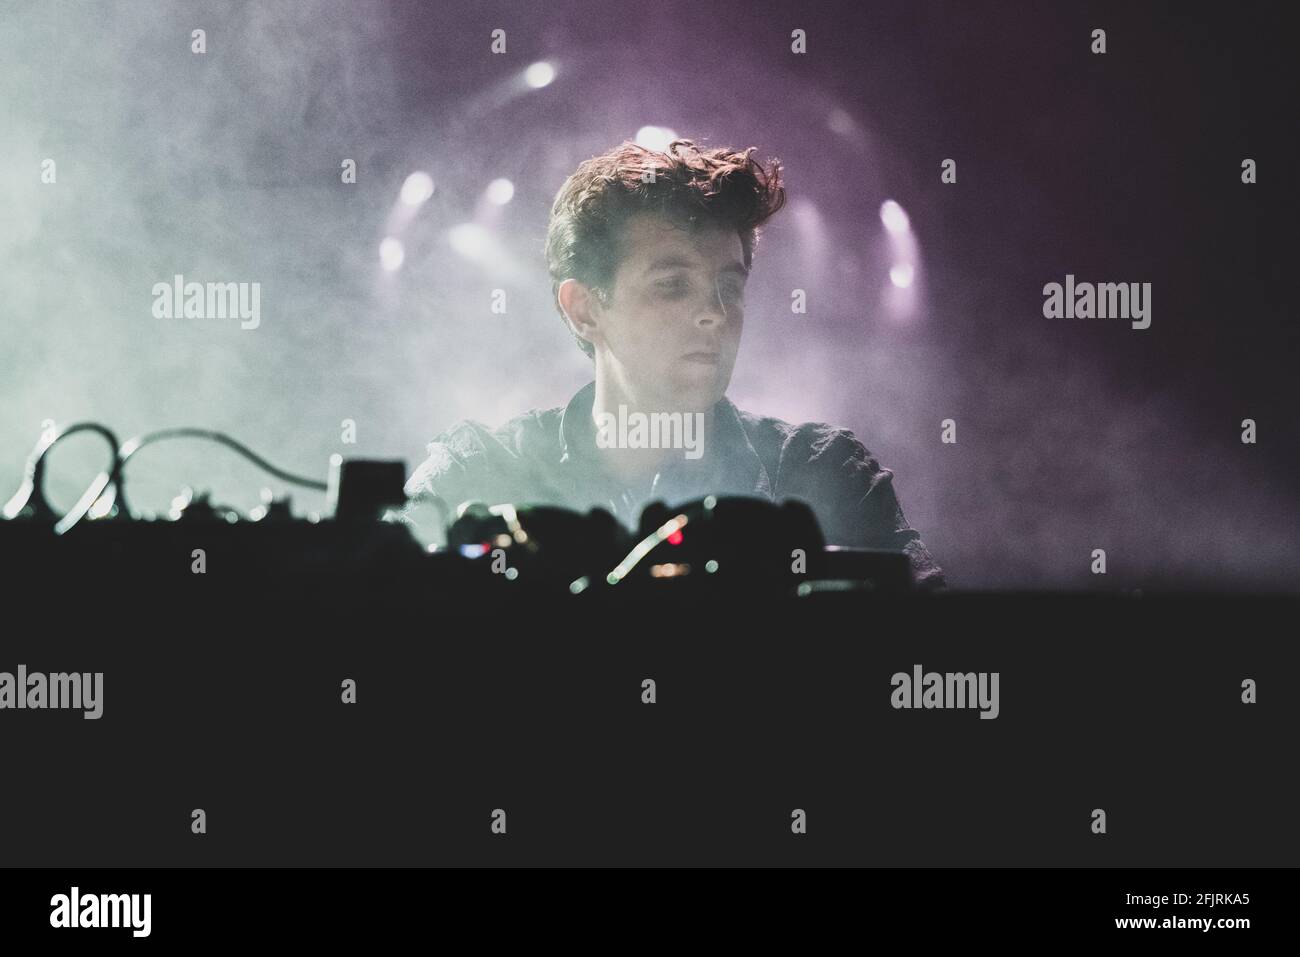 LINGOTTO FIERE, TURIN, ITALIEN: Der englische Musiker, DJ, Plattenproduzent und Remixer Jamie XX spielt live auf der Bühne des Club to Club Festivals in Turin. Stockfoto